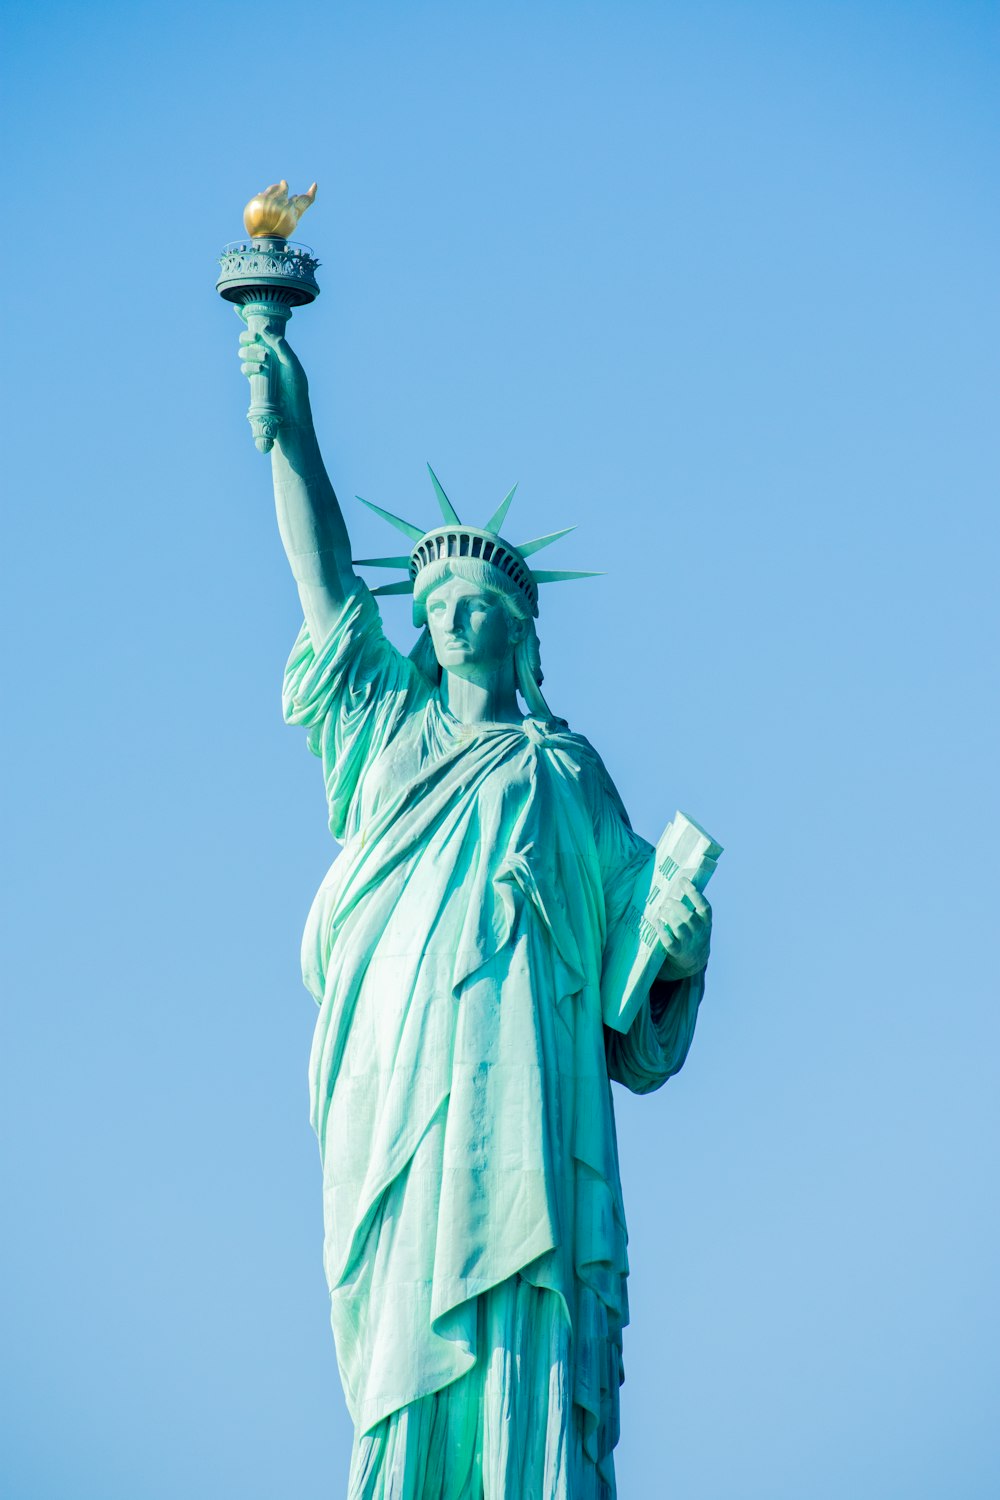 estátua da liberdade de new york